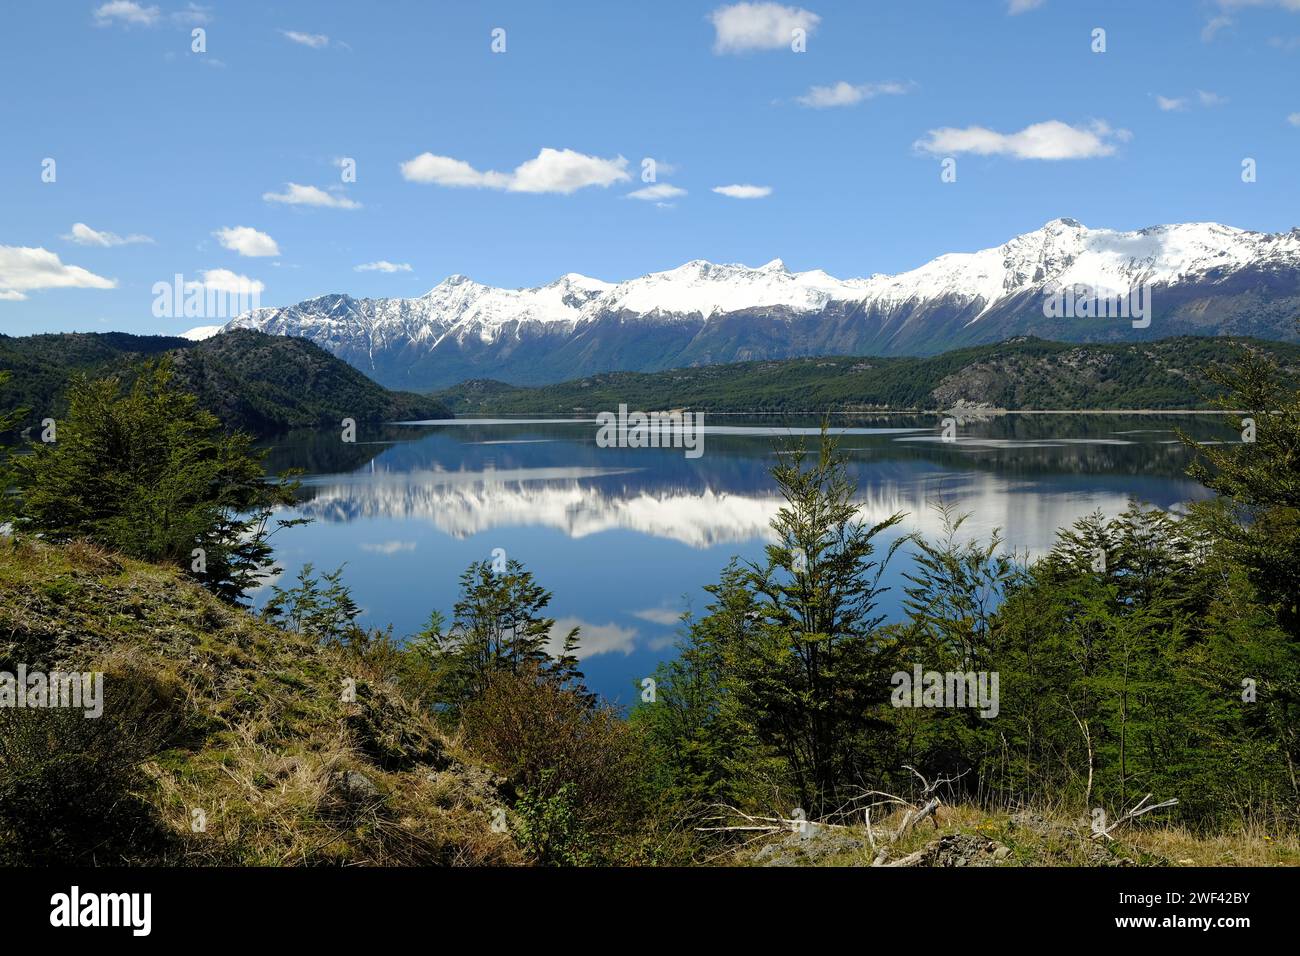 Les montagnes enneigées du Chili patagonien se reflètent dans les eaux tranquilles du Lago Cisnes près de Villa O'Higgins sur la Carretera Austral. Banque D'Images